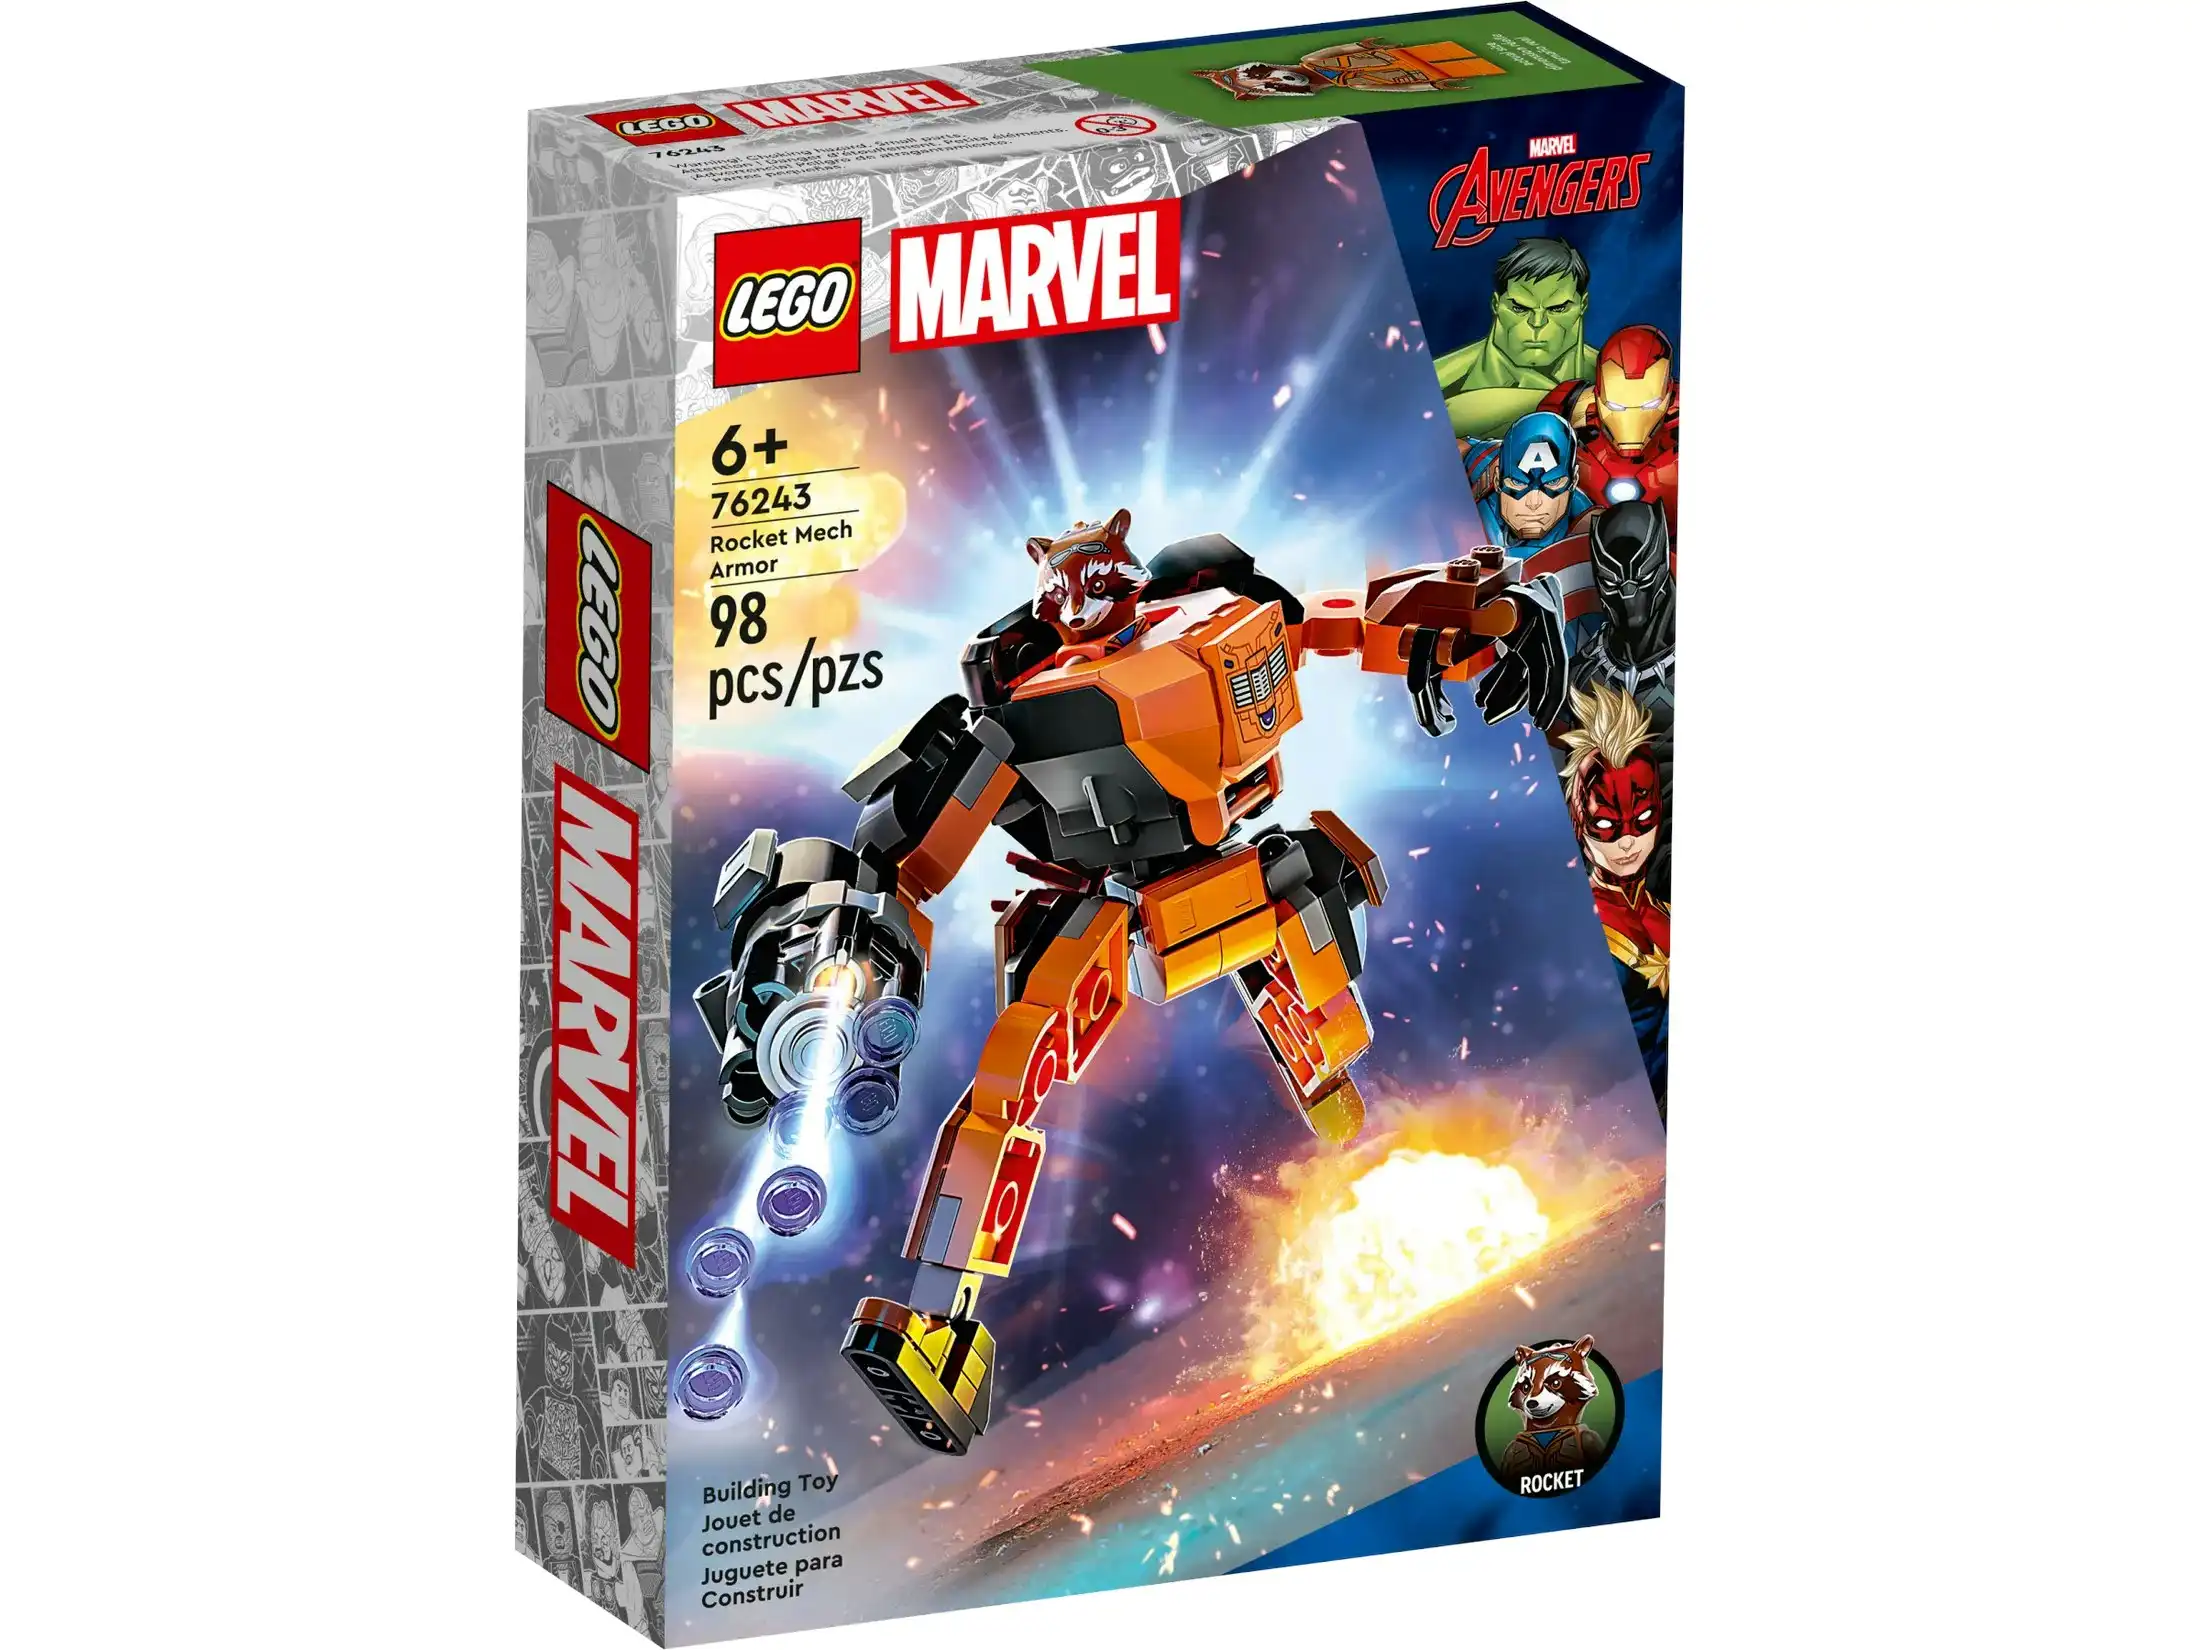 LEGO 76243 Rocket Mech Armor - Marvel Super Heroes